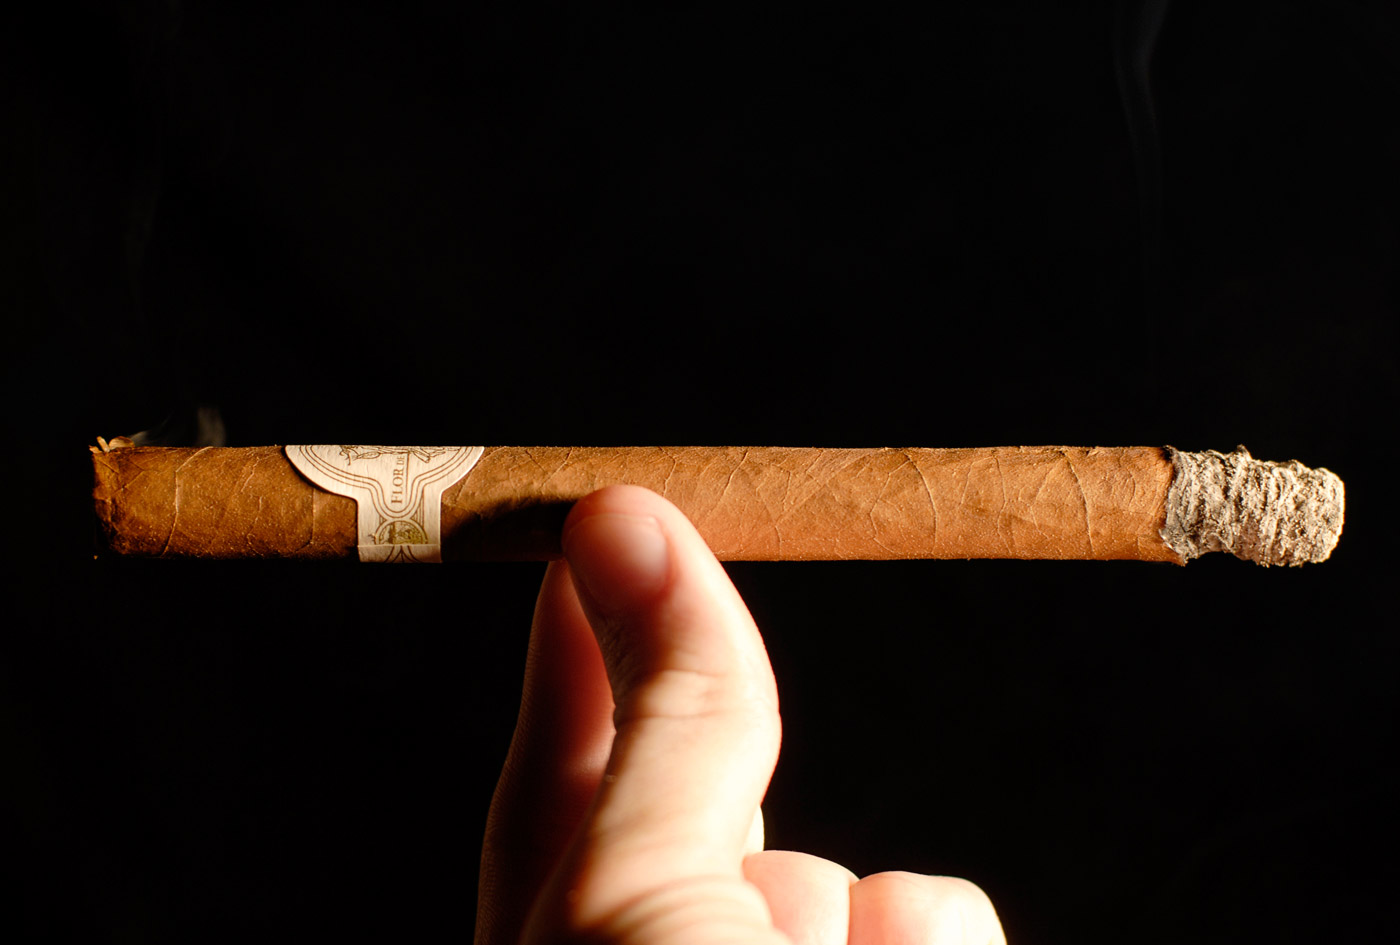 Maya Selva Flor de Selva No. 20 lancero cigar review